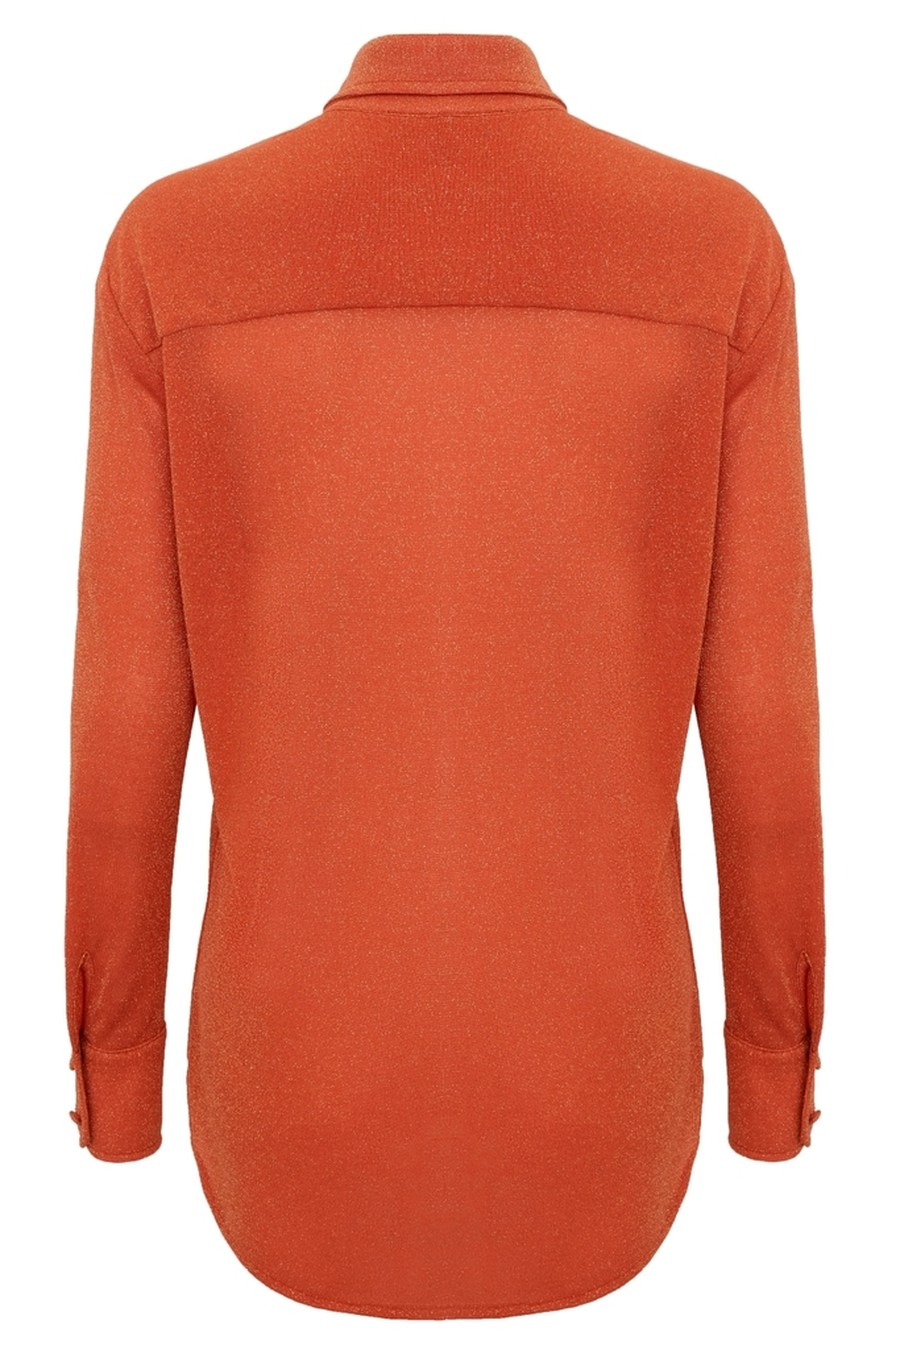 camisa lurex orange SB48 ripple bb